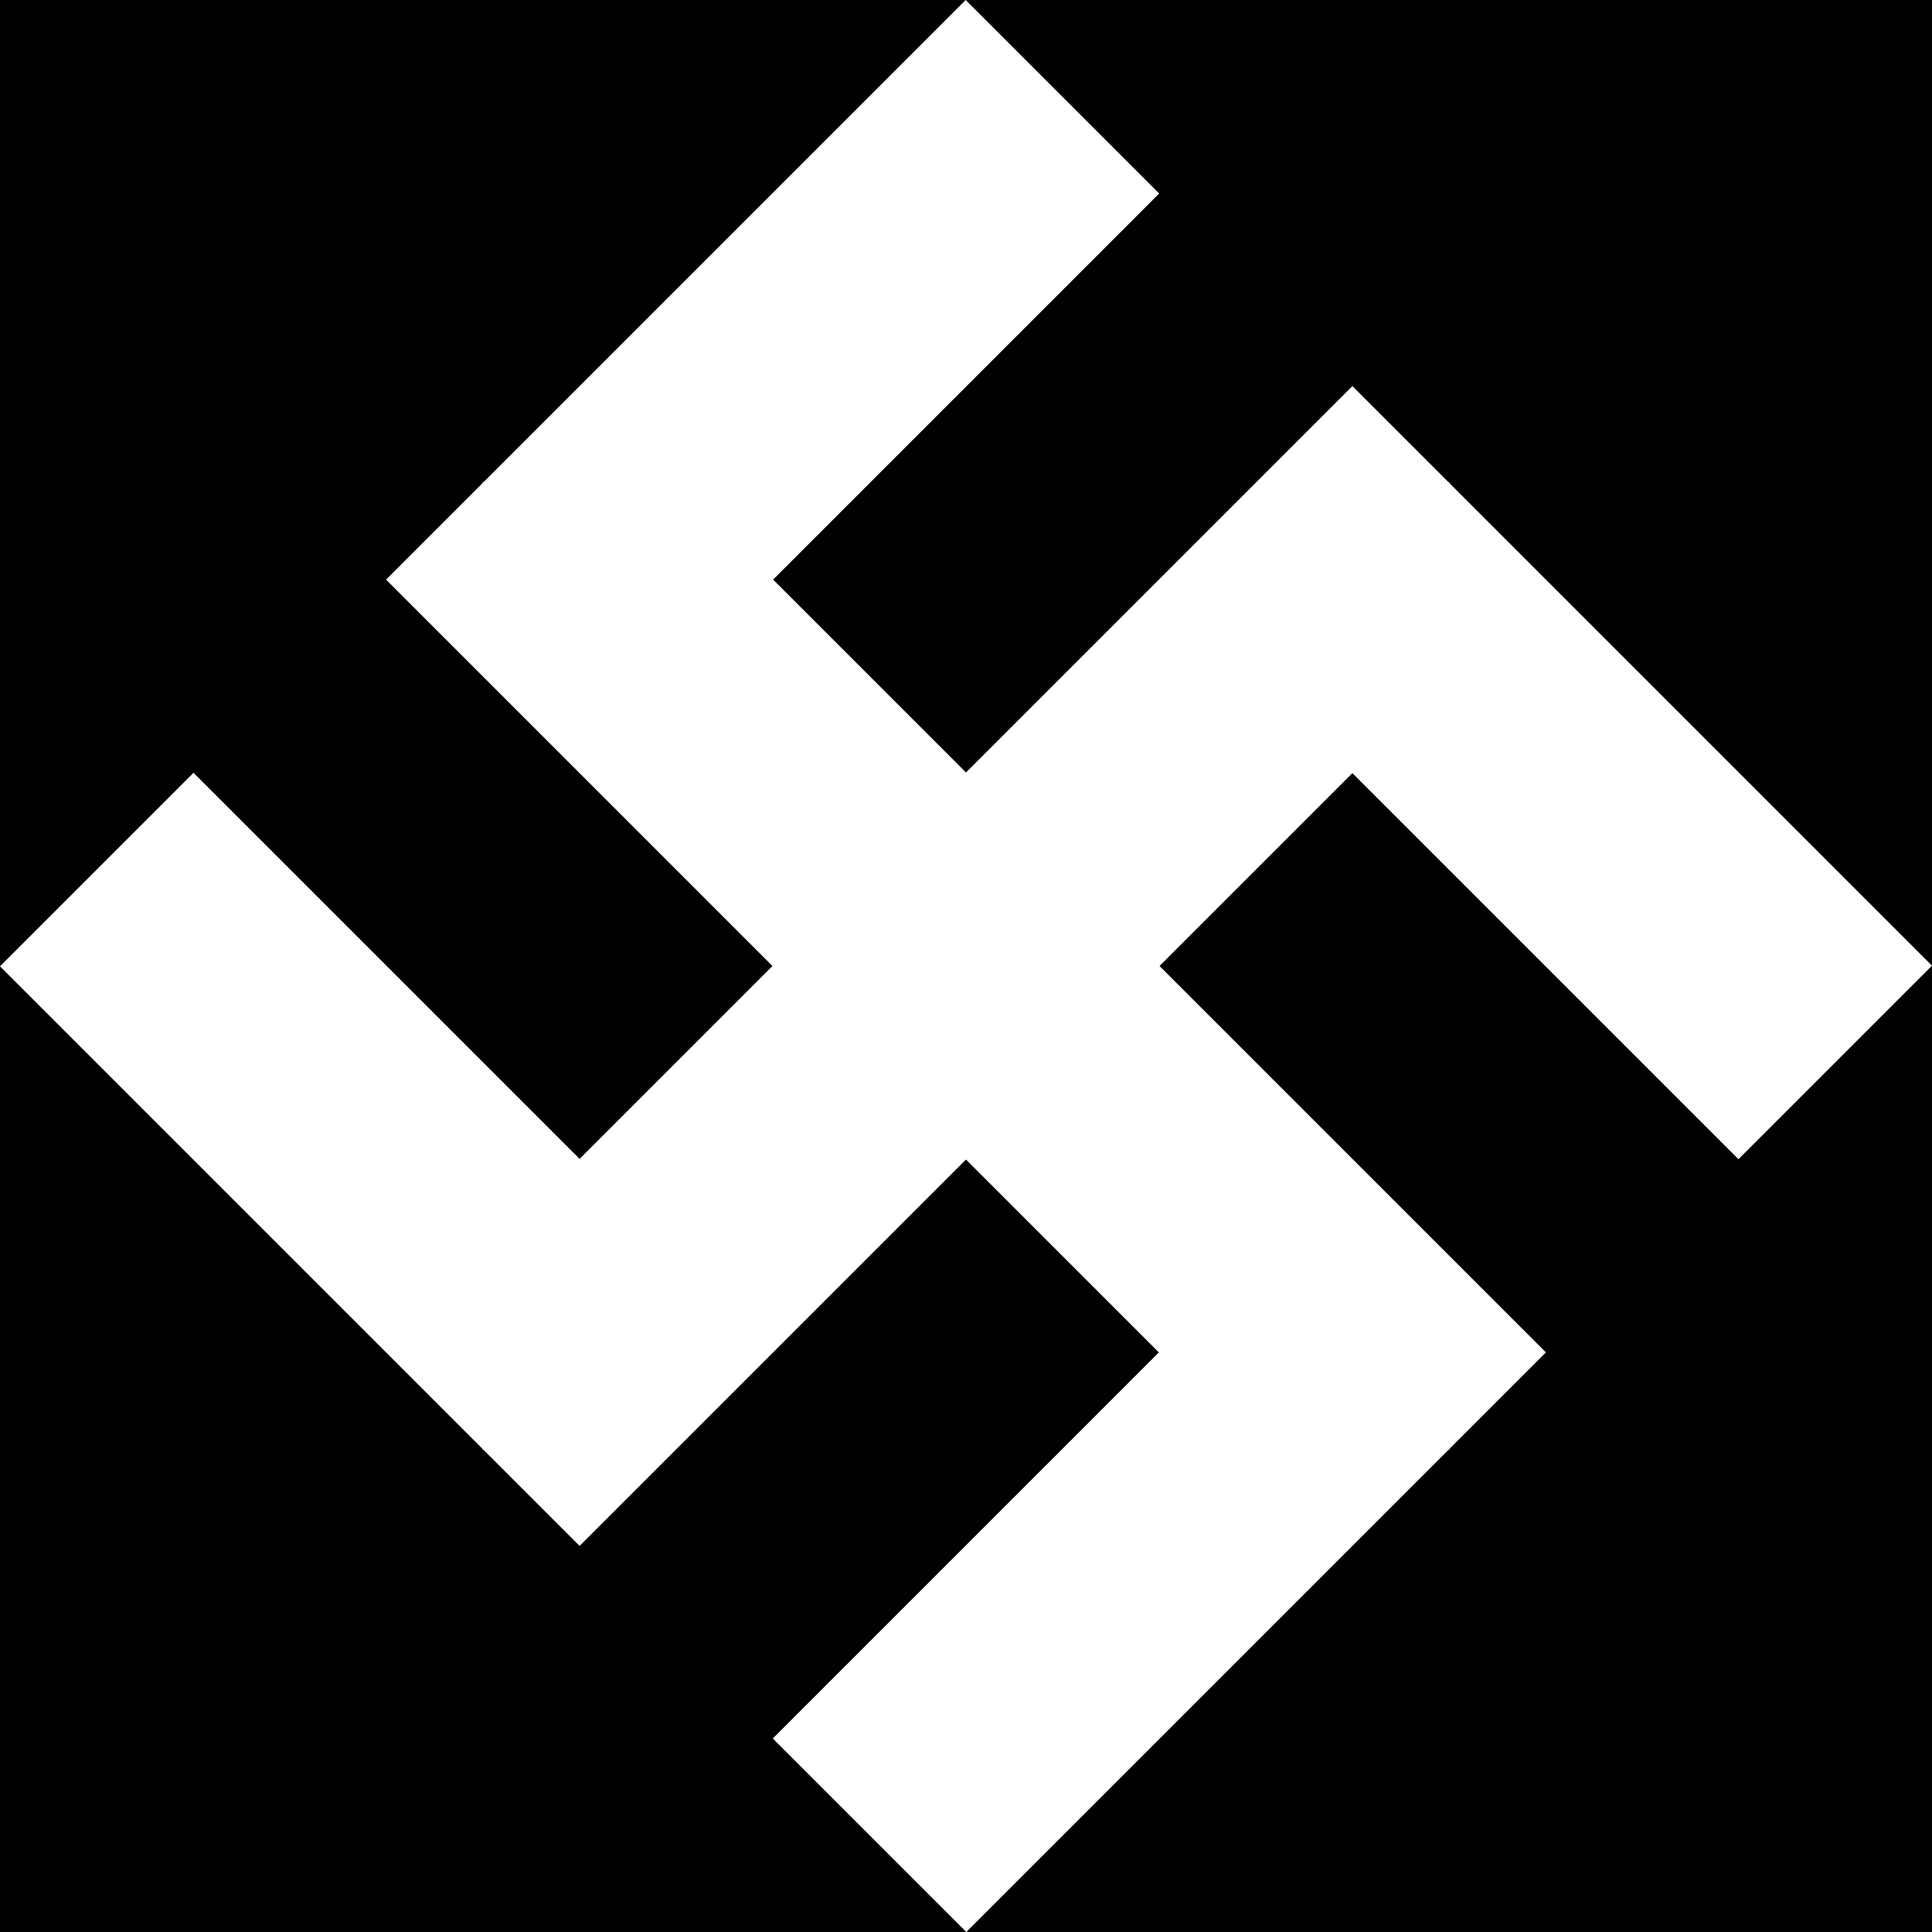 Swastika logo vector